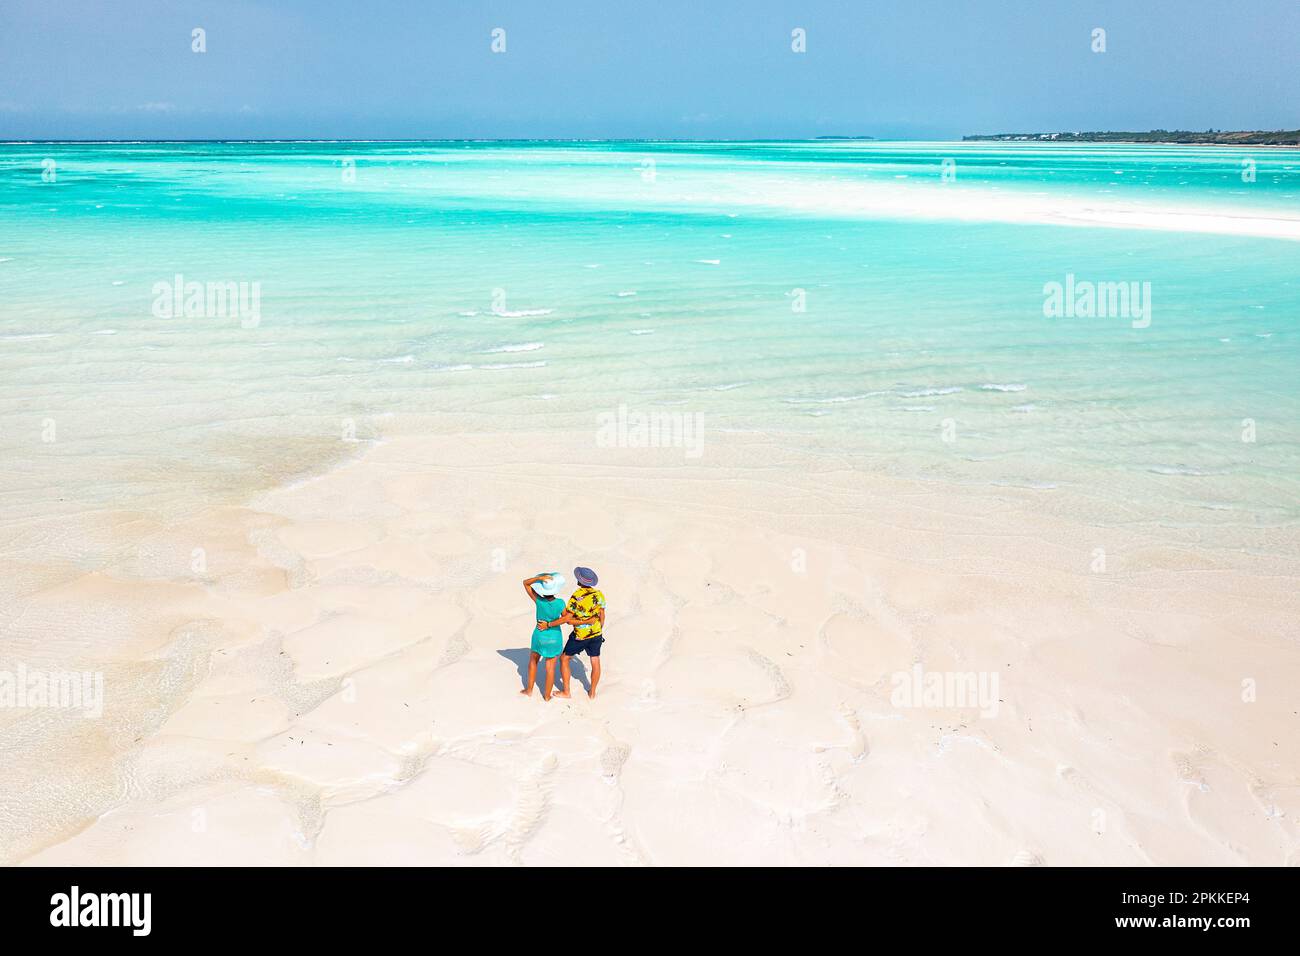 Fröhlicher Mann und Frau am idyllischen tropischen Strand, Blick von oben, Nungwi, Sansibar, Tansania, Ostafrika, Afrika Stockfoto